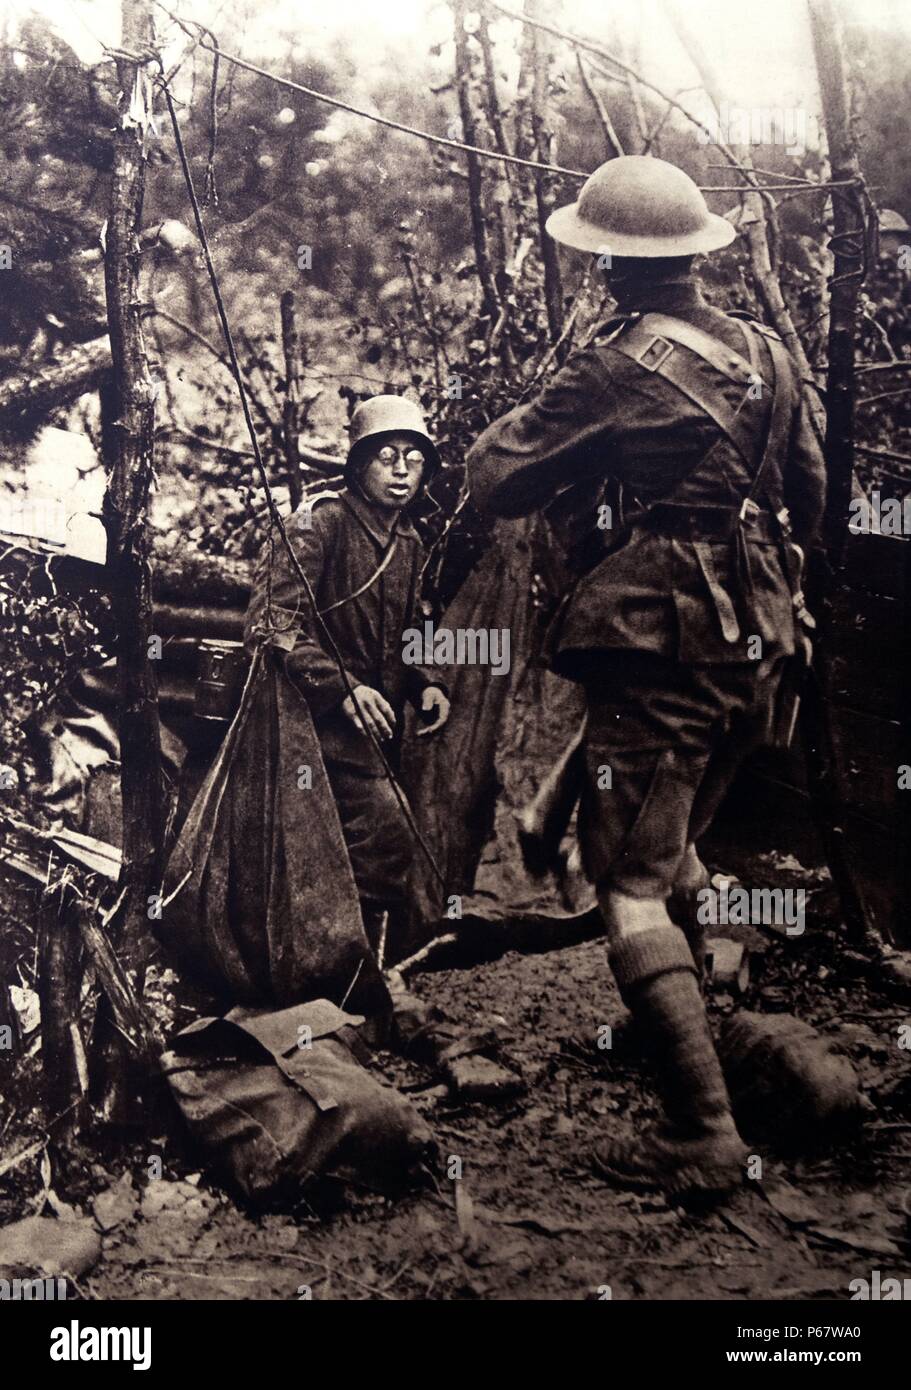 Soldat allemand renonce à un soldat d'infanterie britannique dans les tranchées de France, pendant la première guerre mondiale Banque D'Images